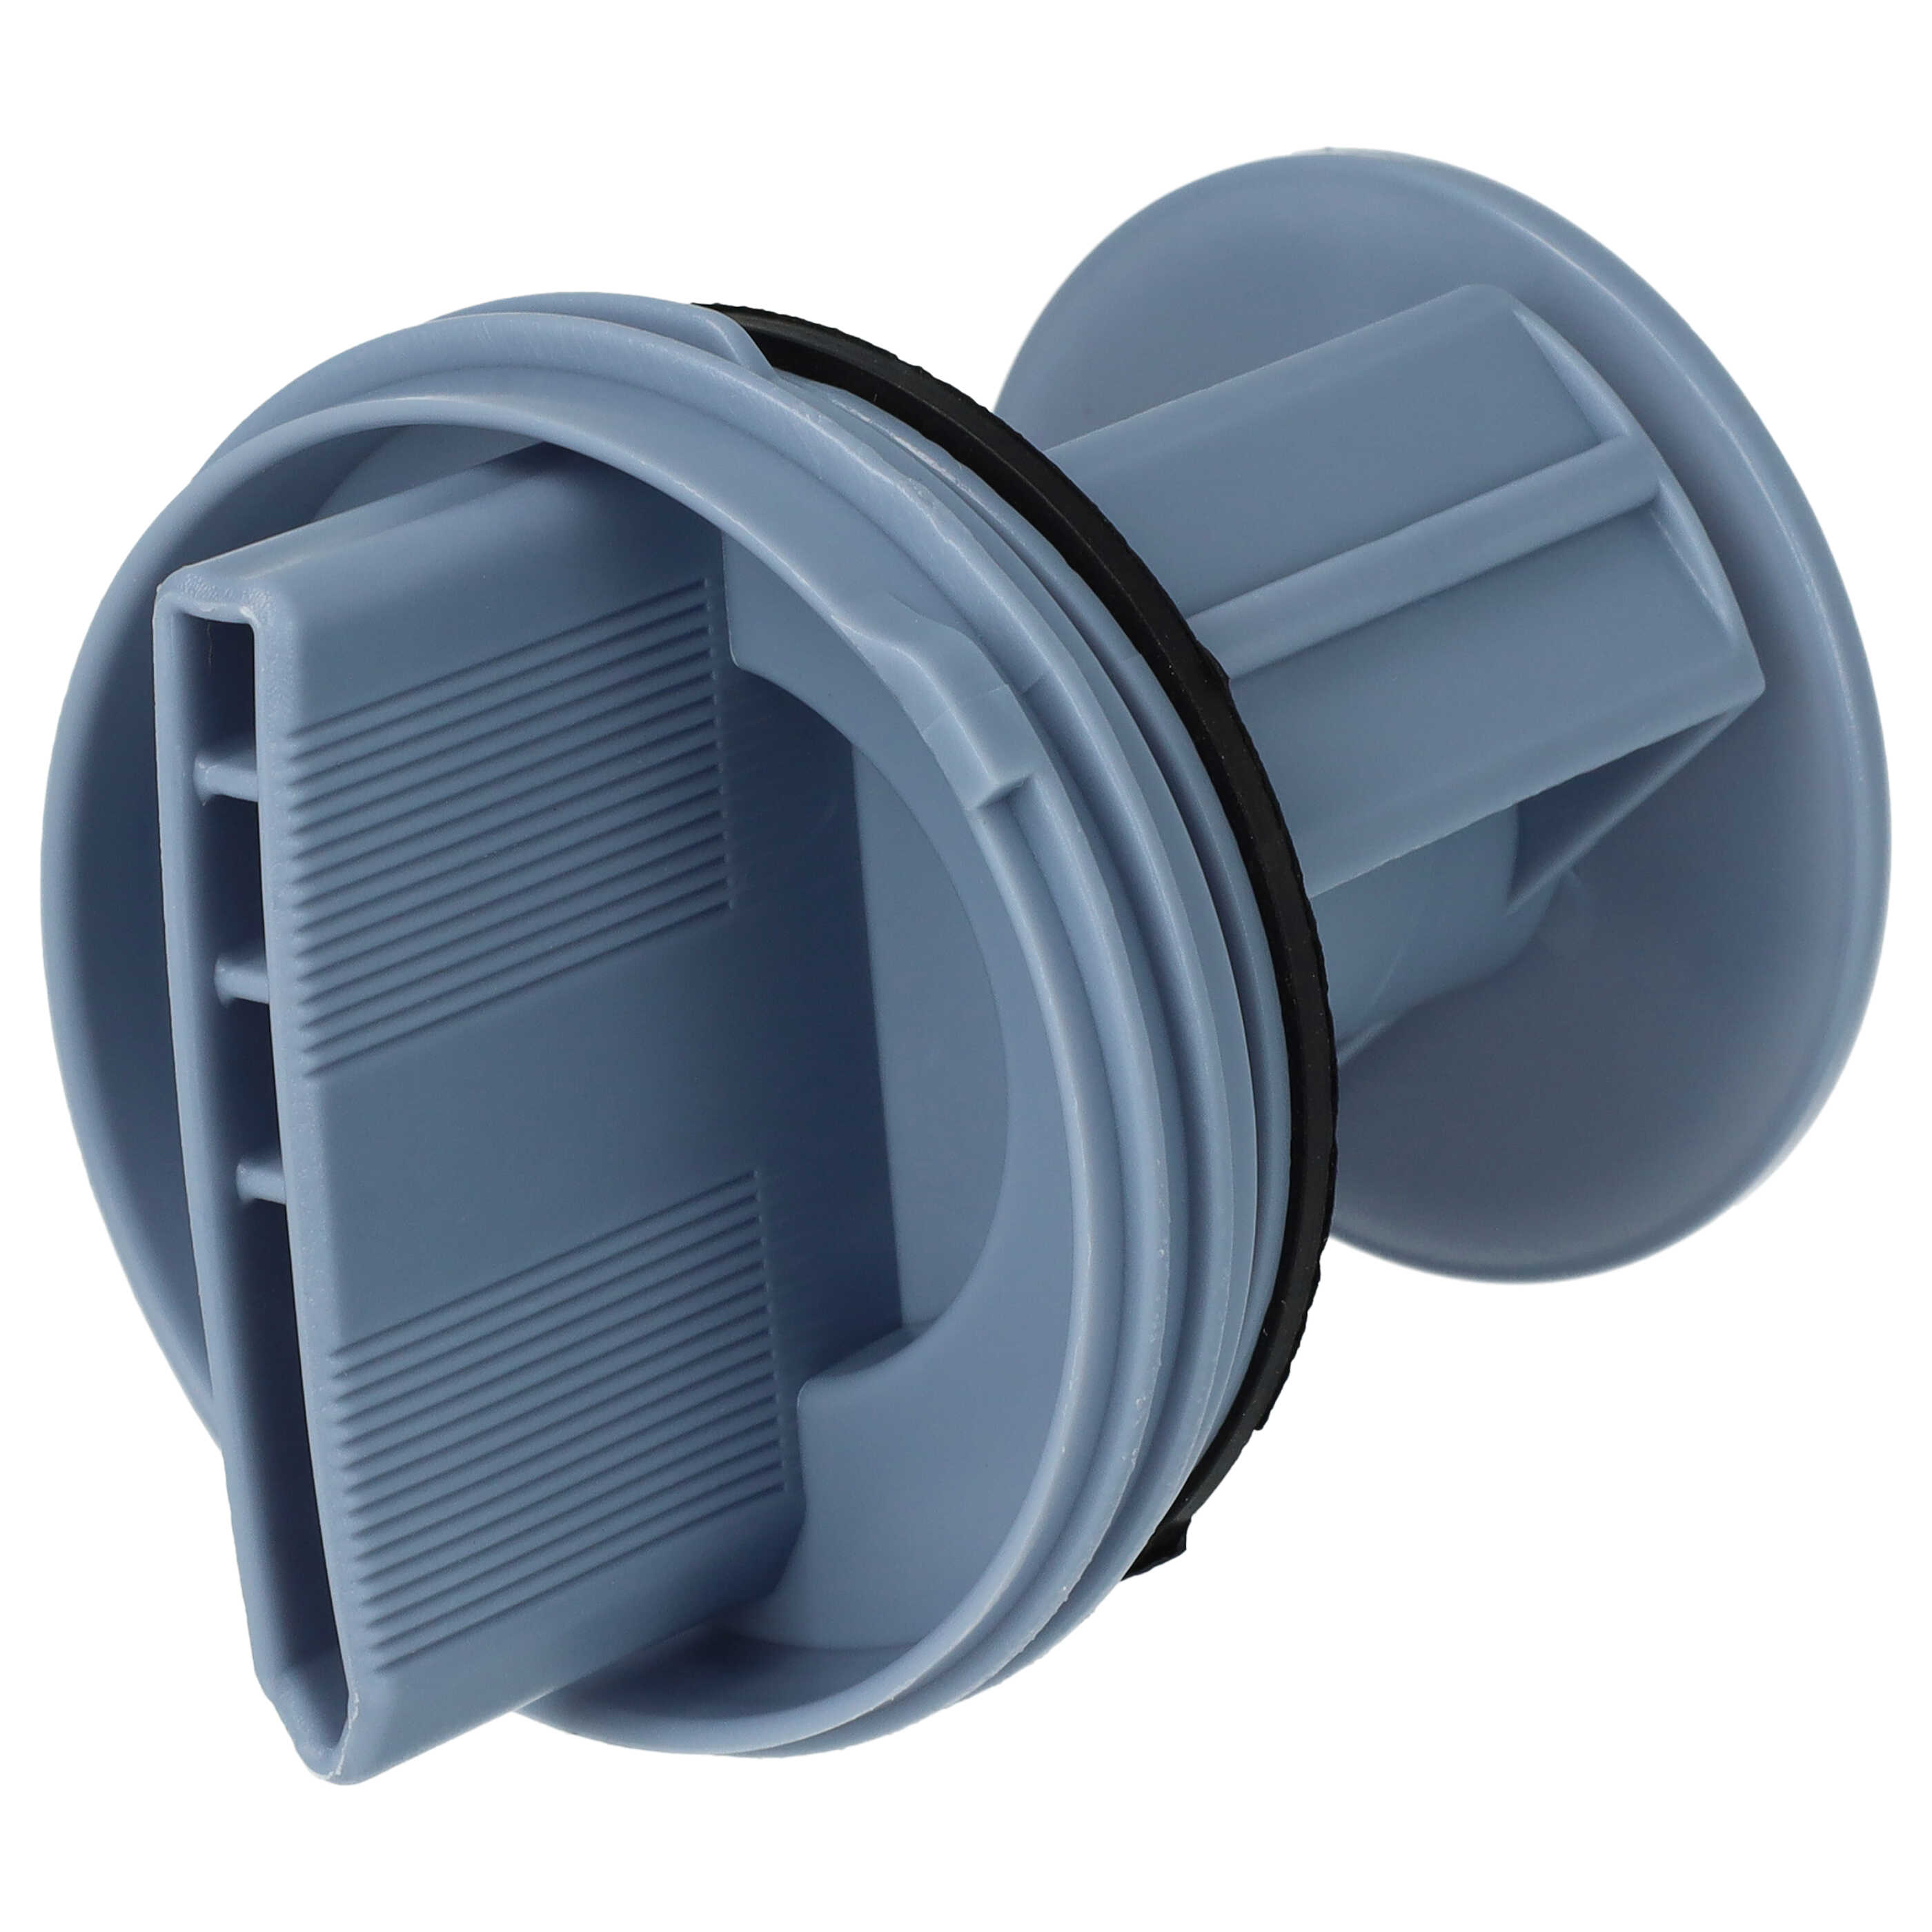 Filtr pompy odpływowej do pralki suszarki zamiennik Bosch 10000845, 00647920, 00605010, 00602008